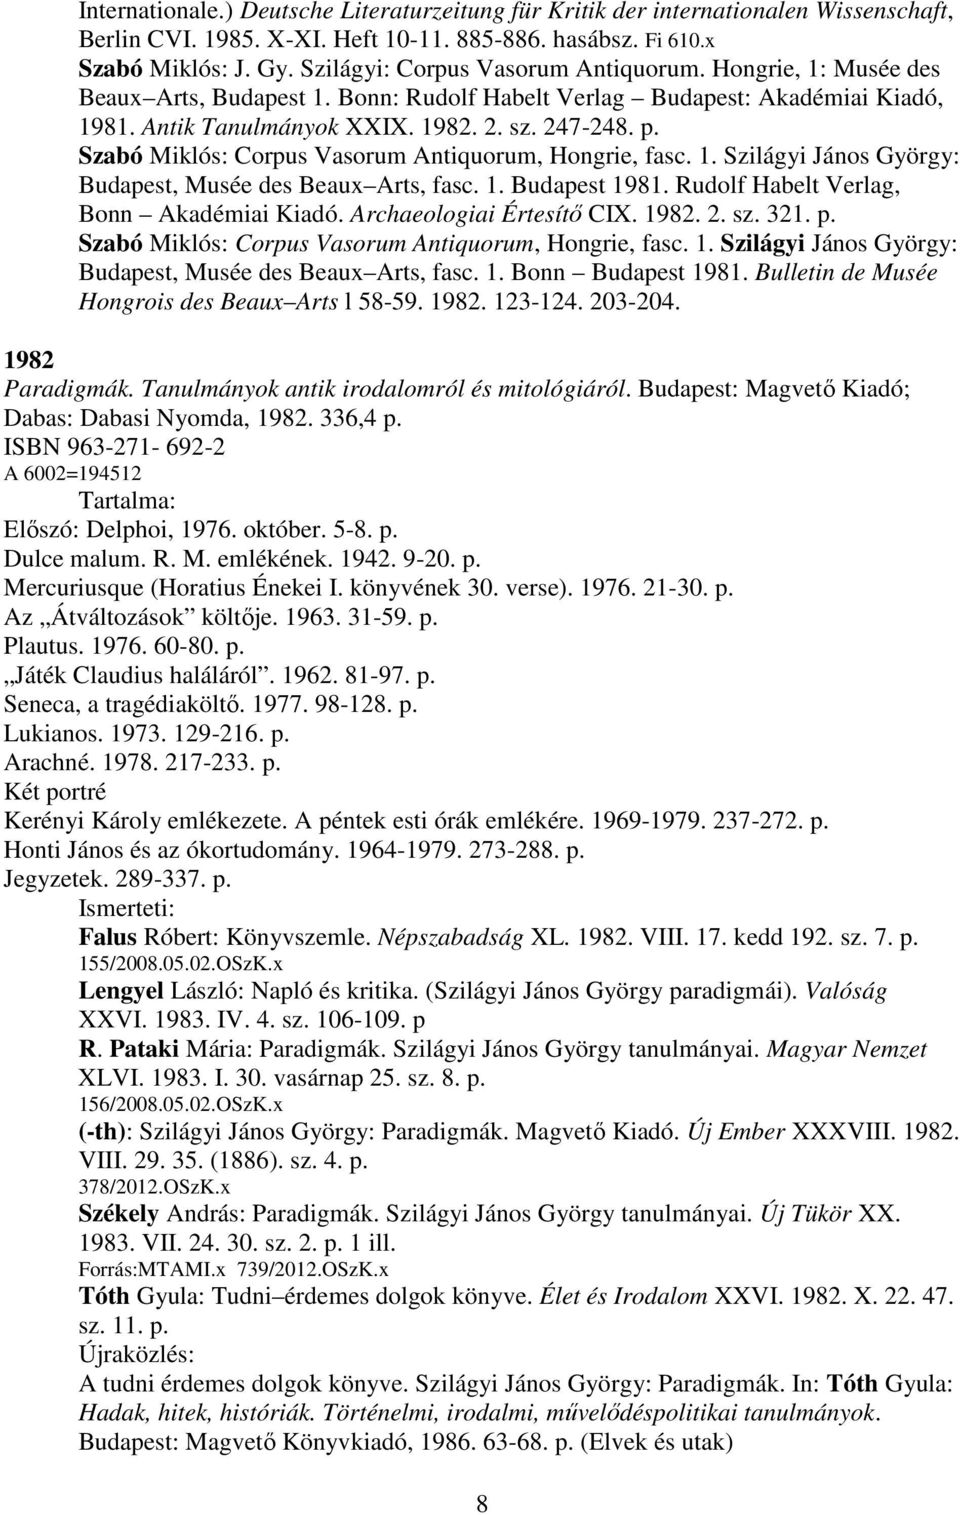 Szabó Miklós: Corpus Vasorum Antiquorum, Hongrie, fasc. 1. Szilágyi János György: Budapest, Musée des Beaux Arts, fasc. 1. Budapest 1981. Rudolf Habelt Verlag, Bonn Akadémiai Kiadó.